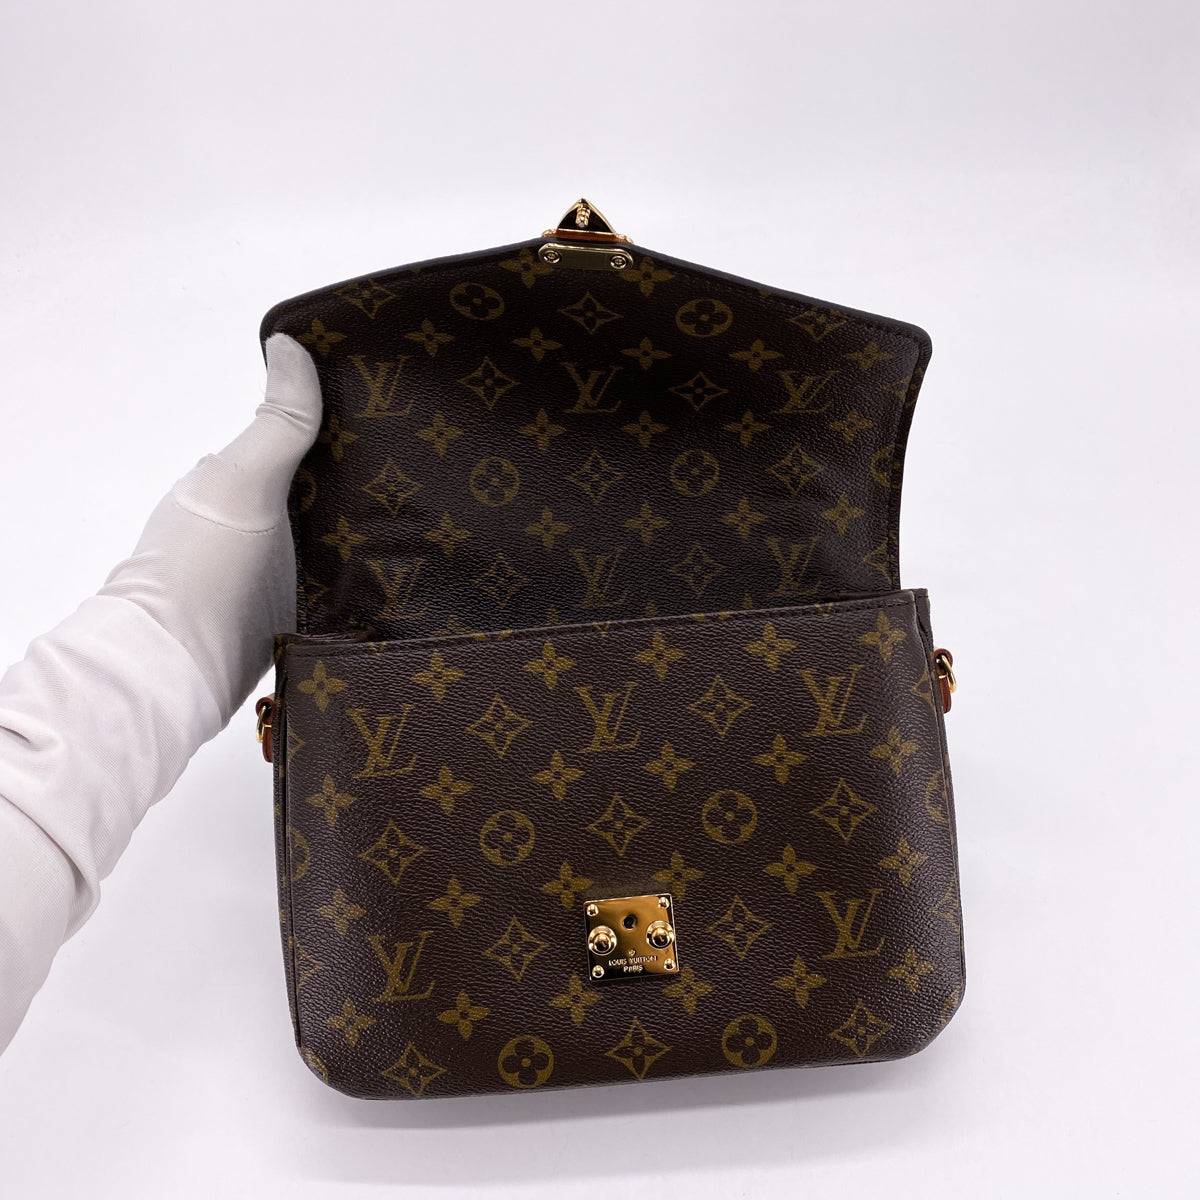 Louis Vuitton India Online  Shop Louis Vuitton Bags  Fashion Accessories  India